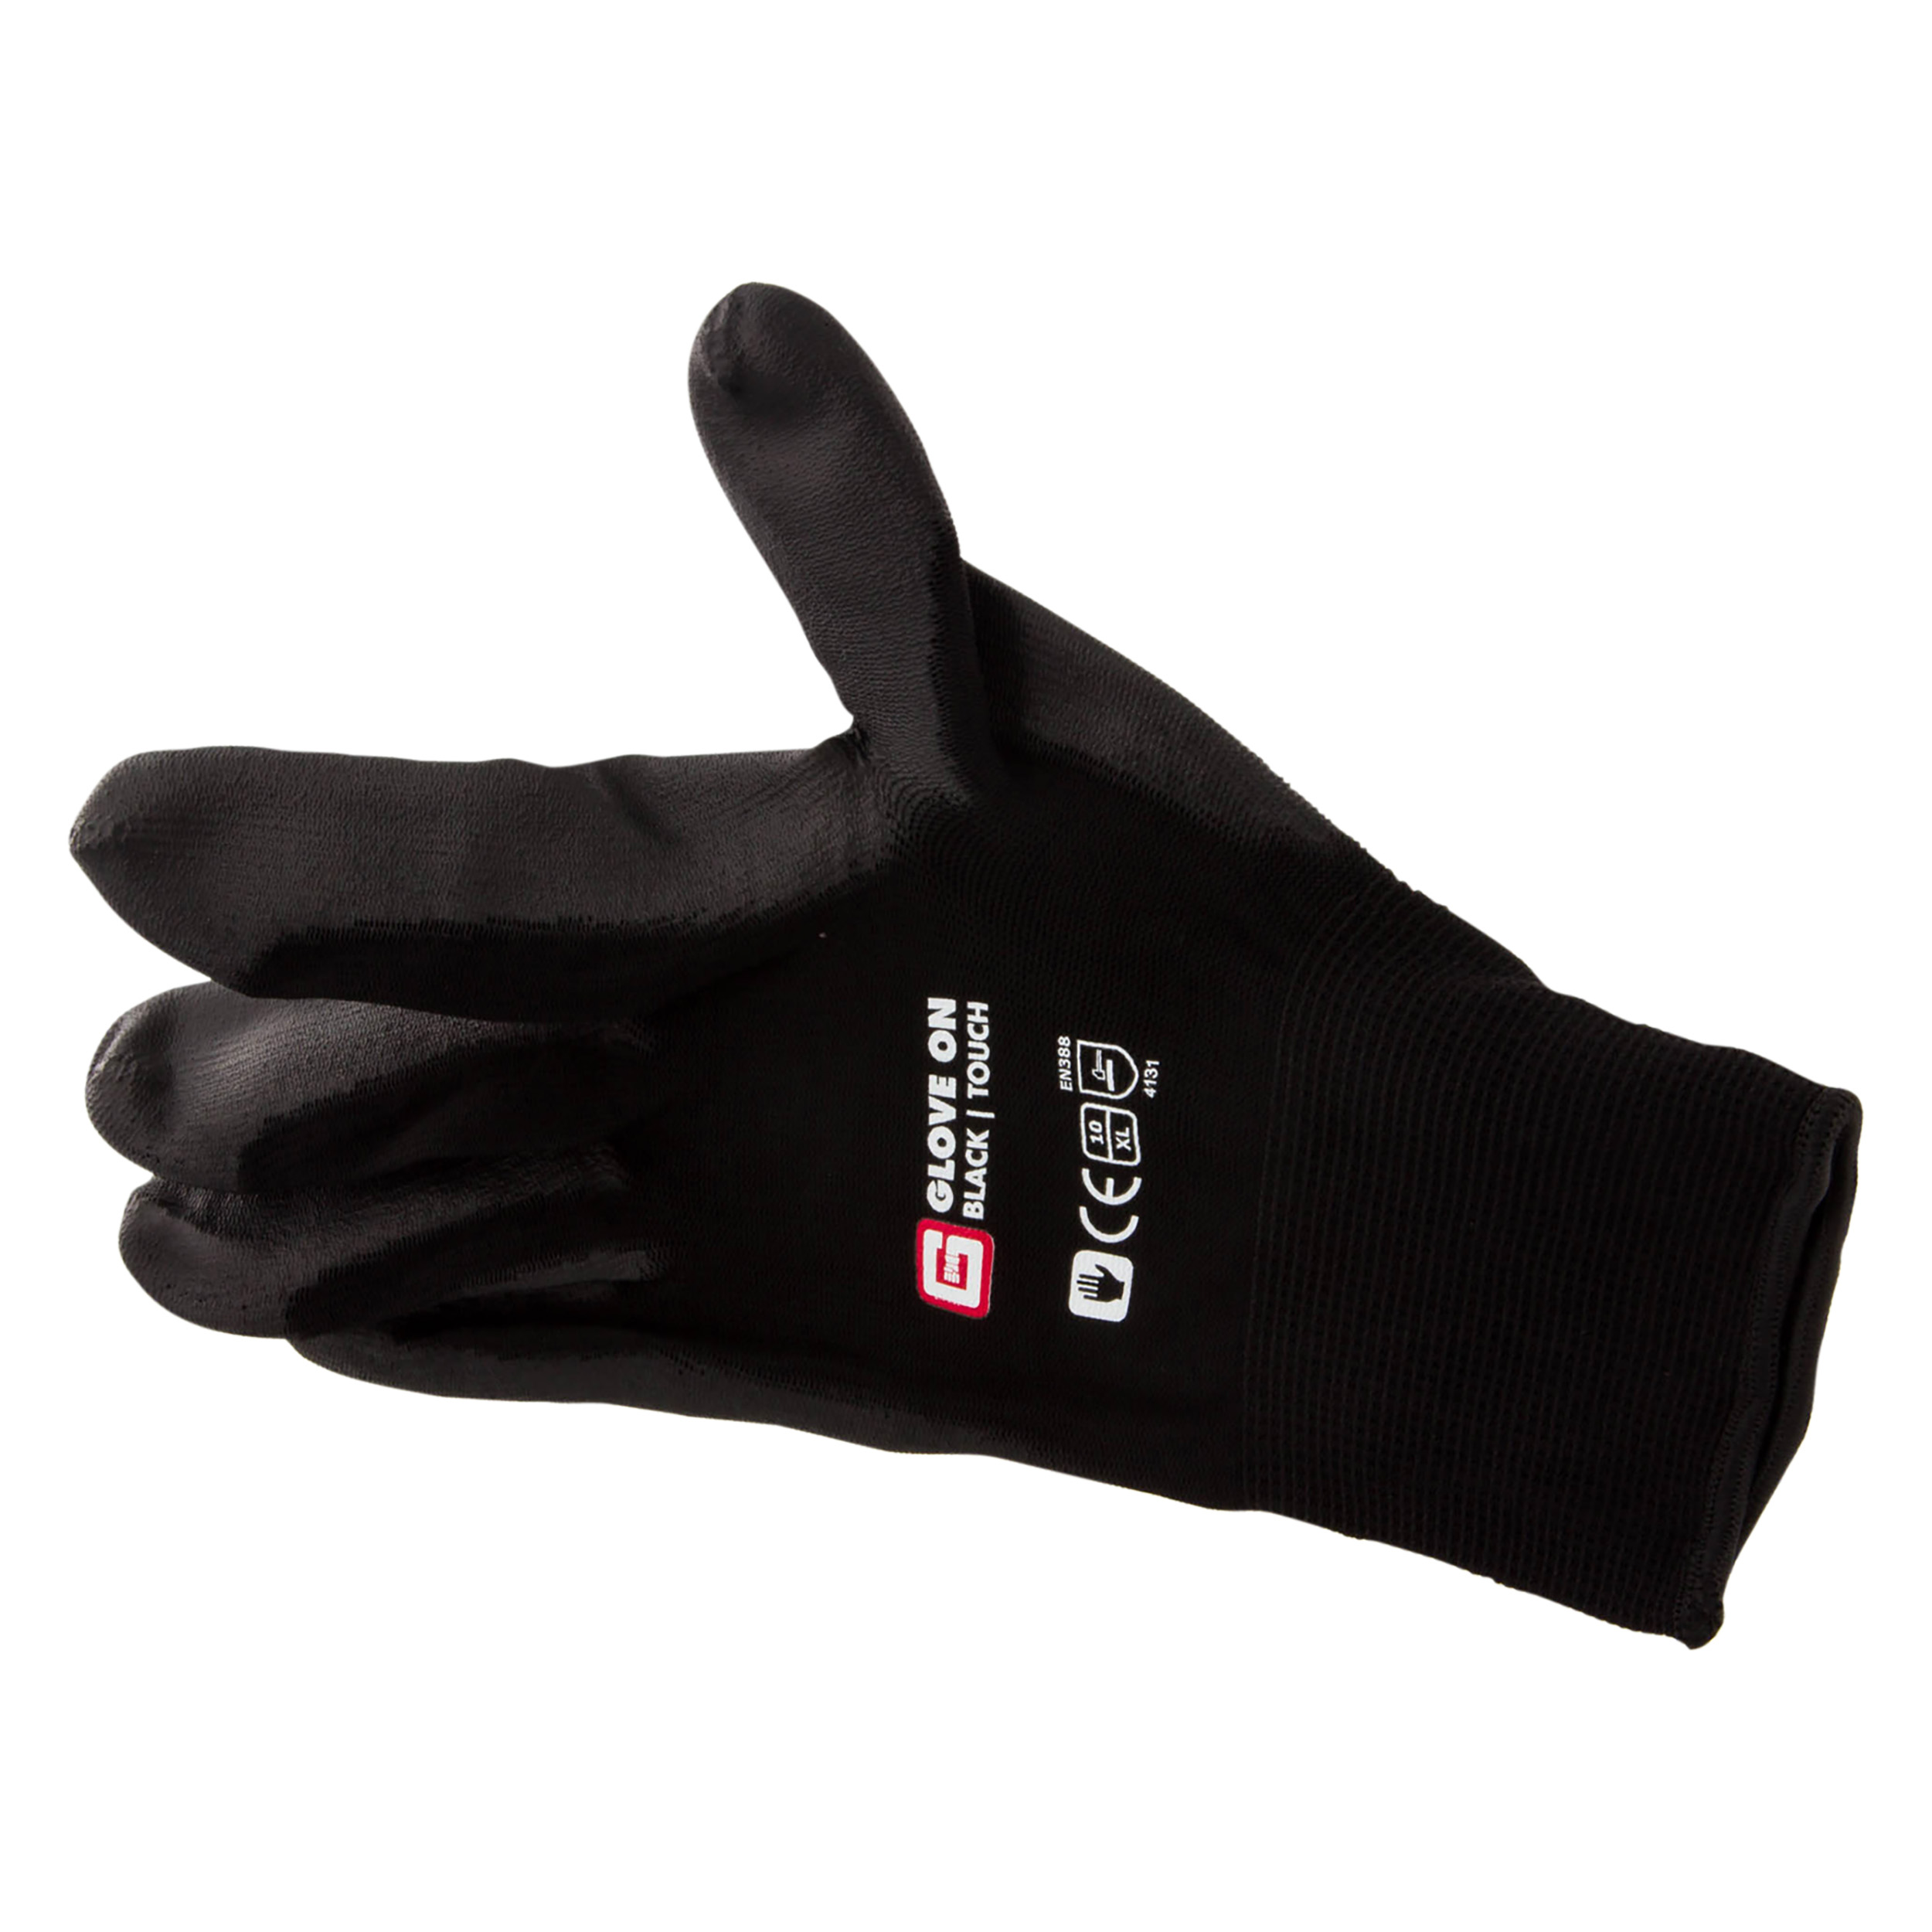 21.080.28 Glove On Touch werkhandschoen touch black - XL